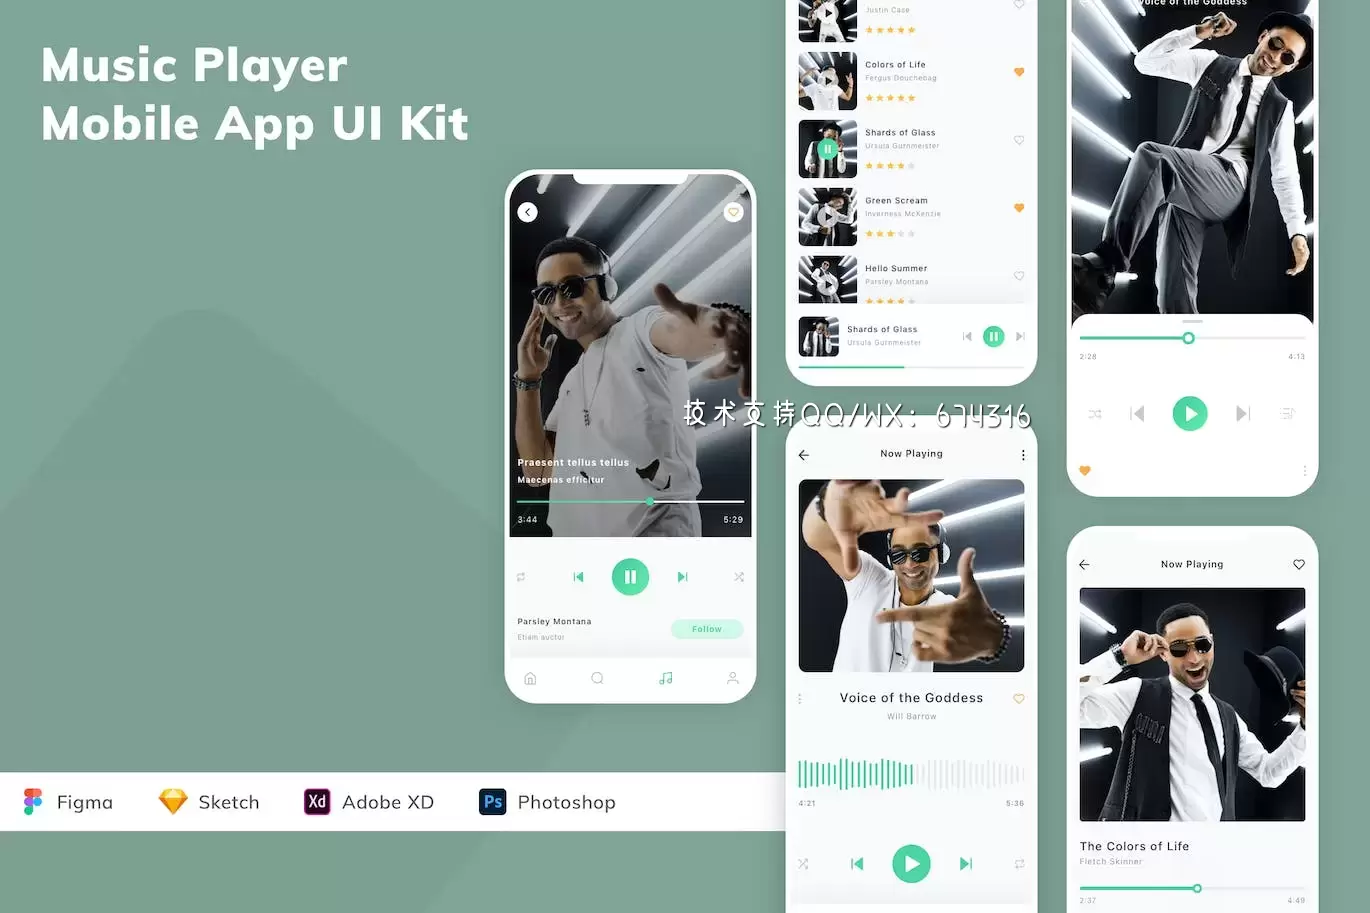 音乐播放器 App UI Kit (FIG,SKETCH,XD,PSD)免费下载